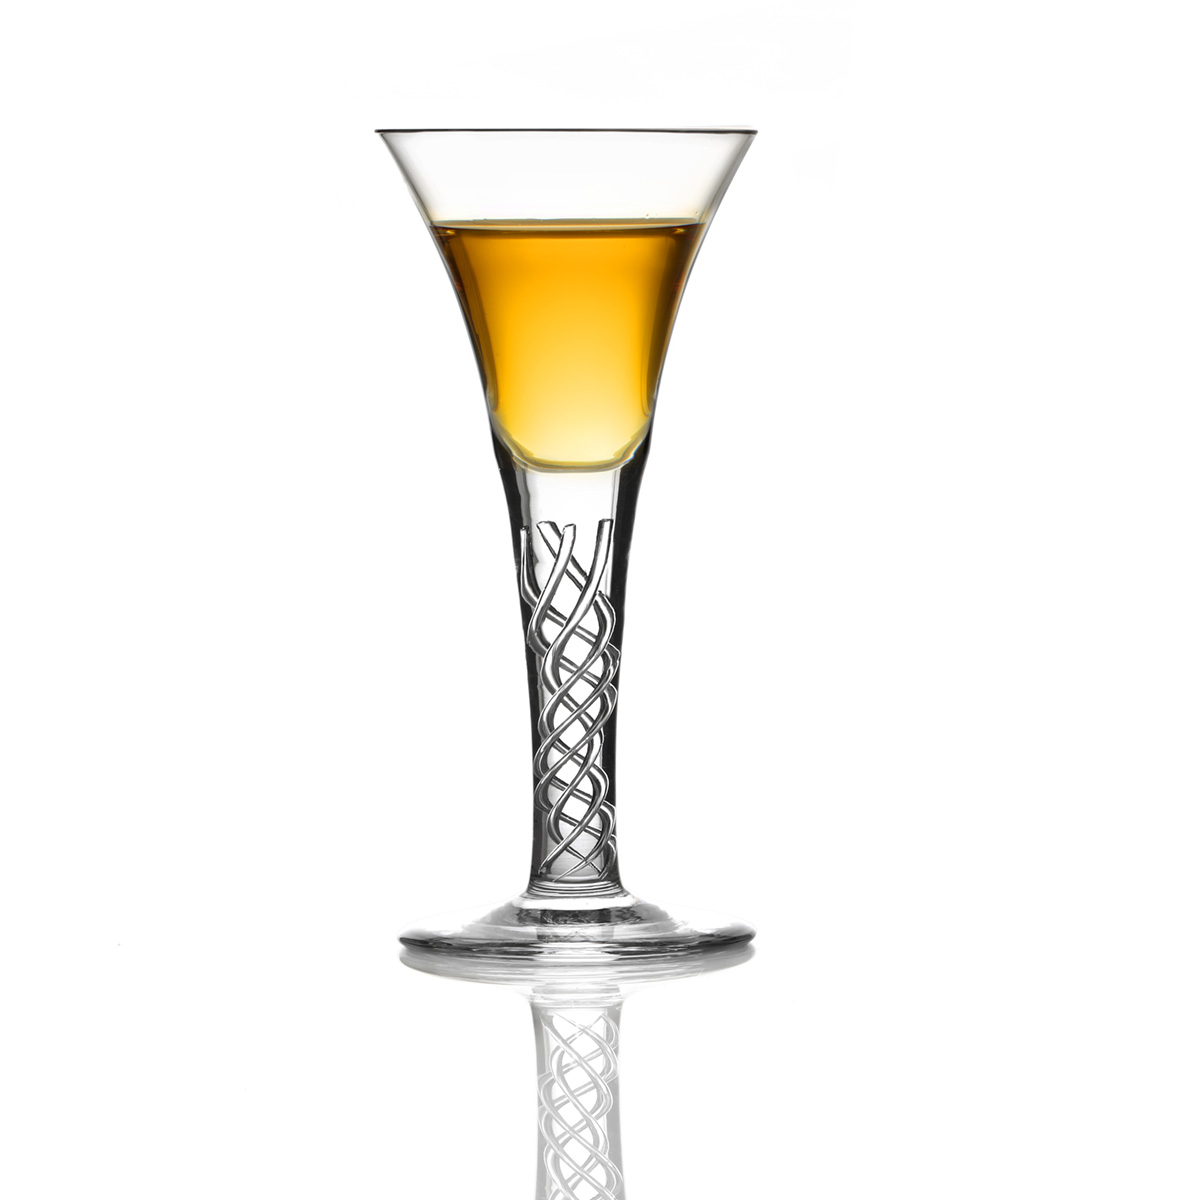 2 Jakobiten Whisky Gläser - Jacobite Dram - Handgefertigt aus Kristallglas